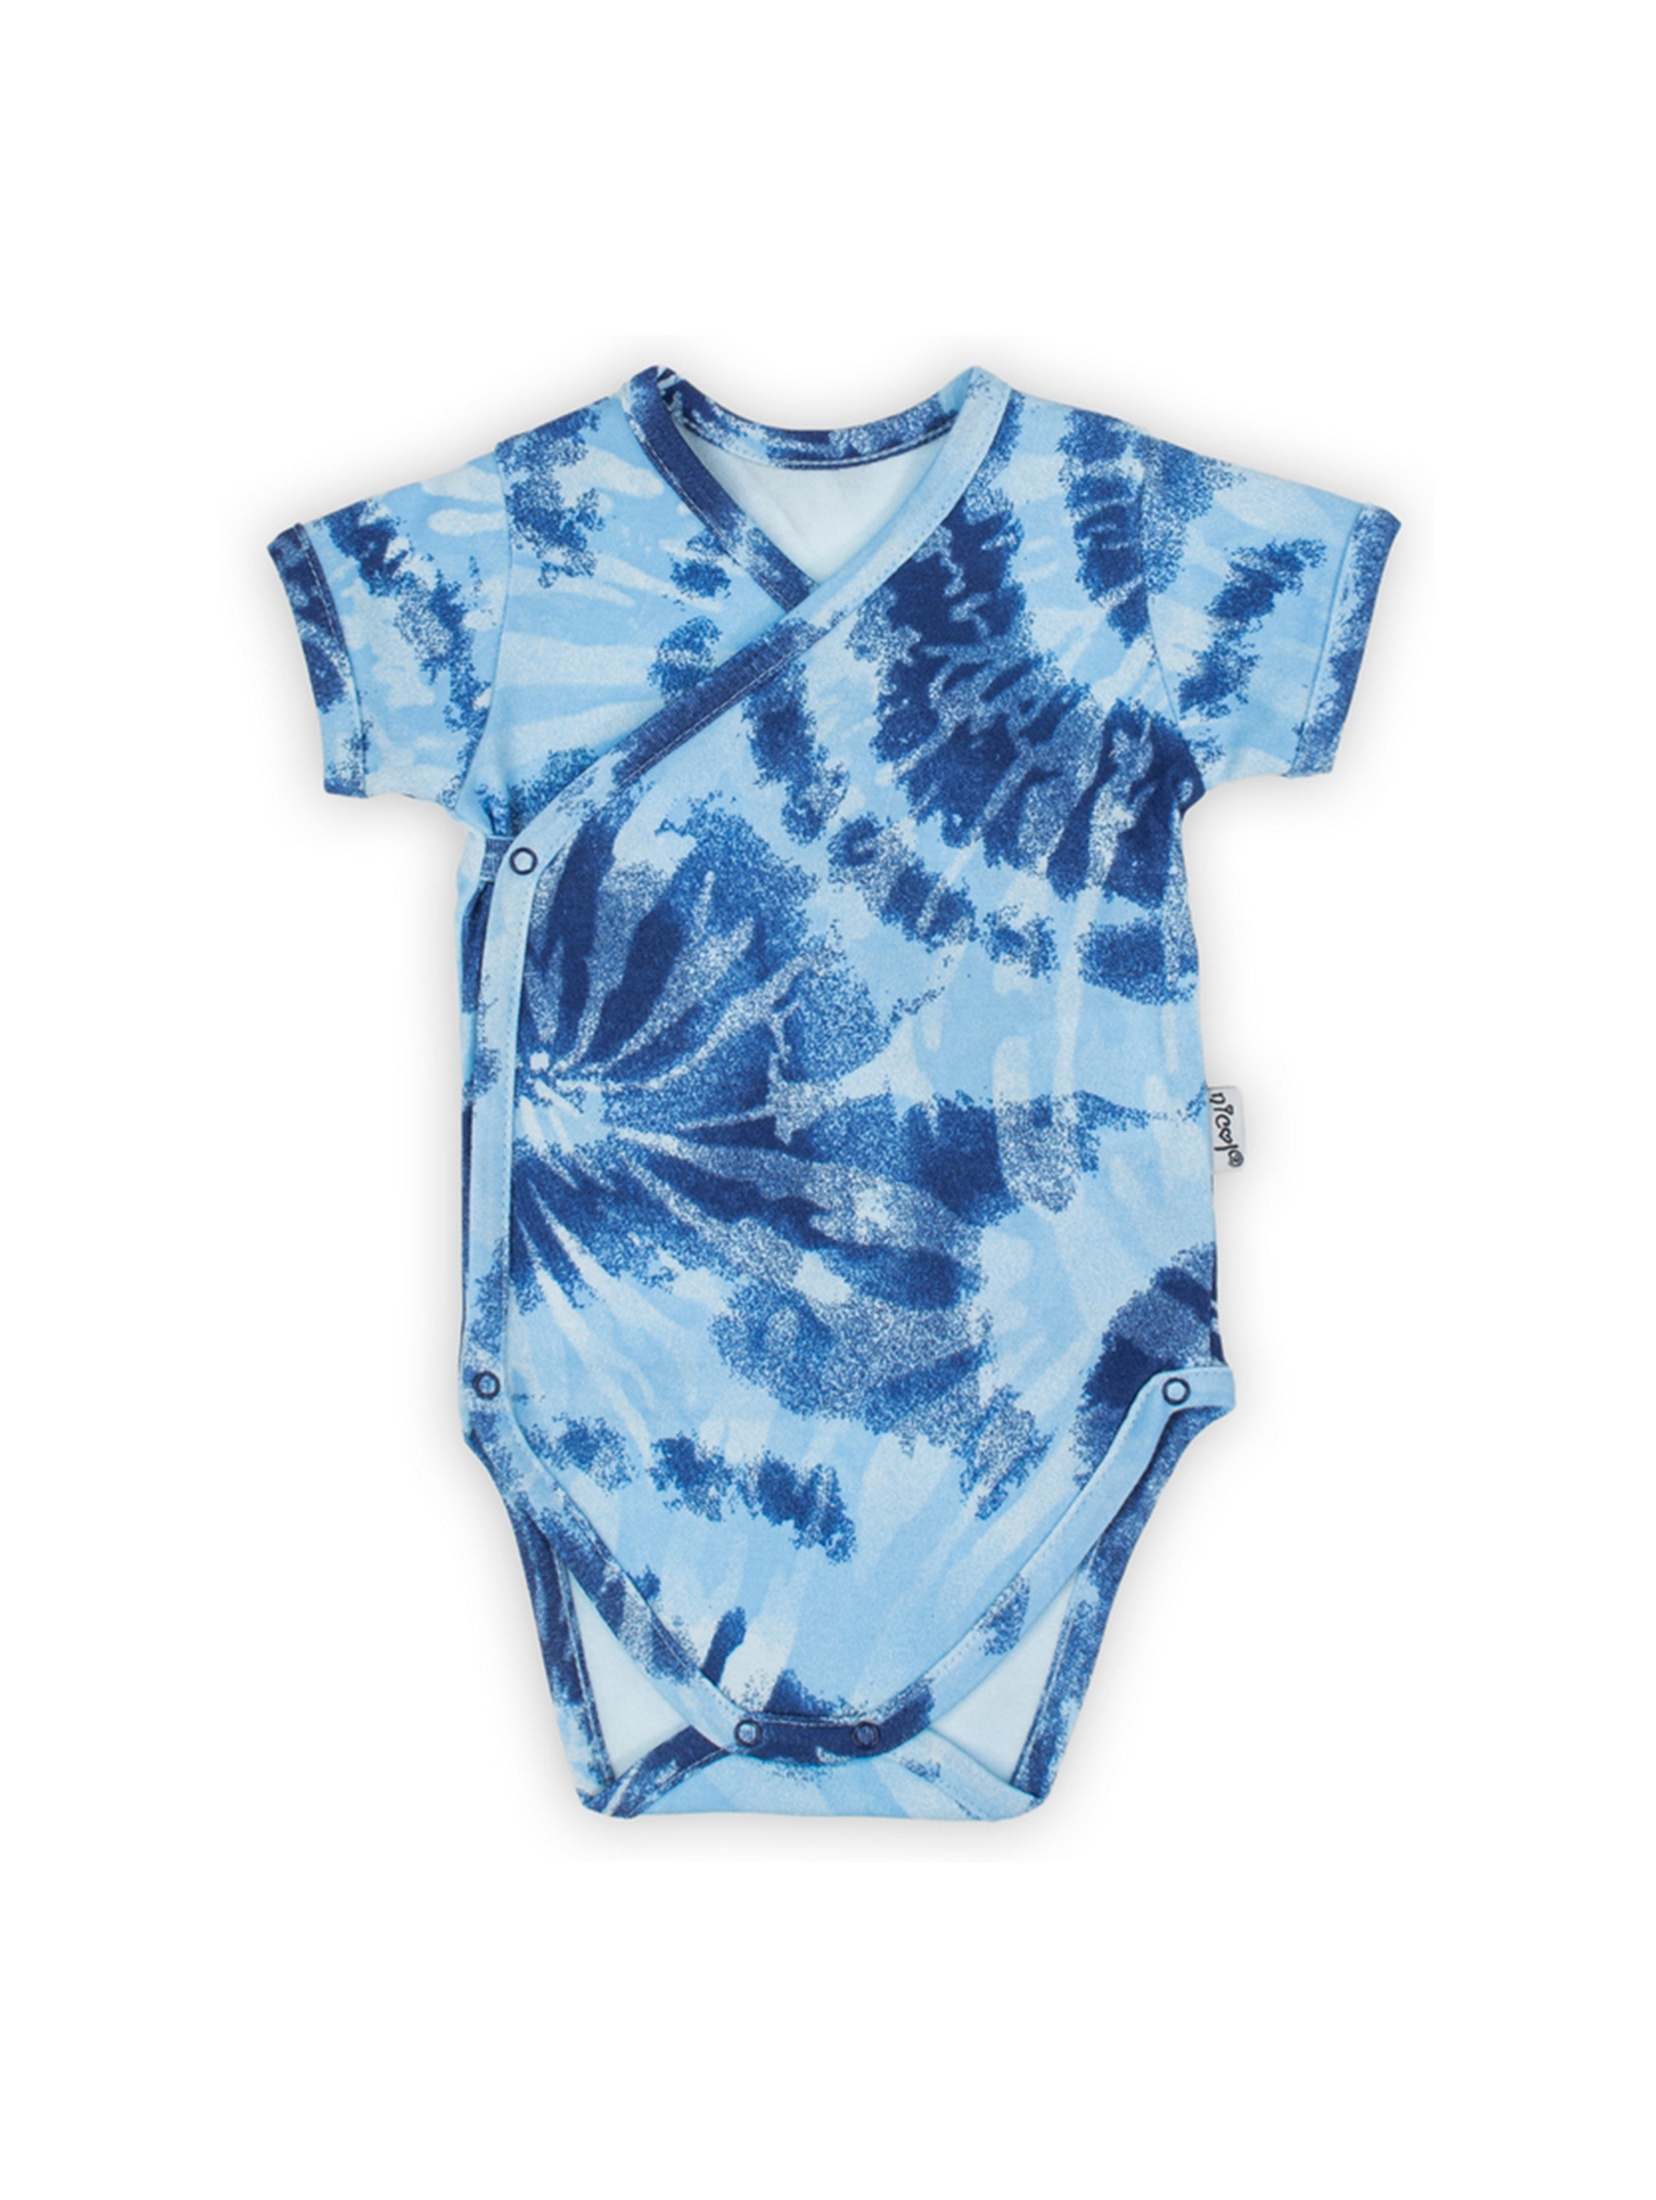 Bawełniane body niemowlęce we wzory niebieskie